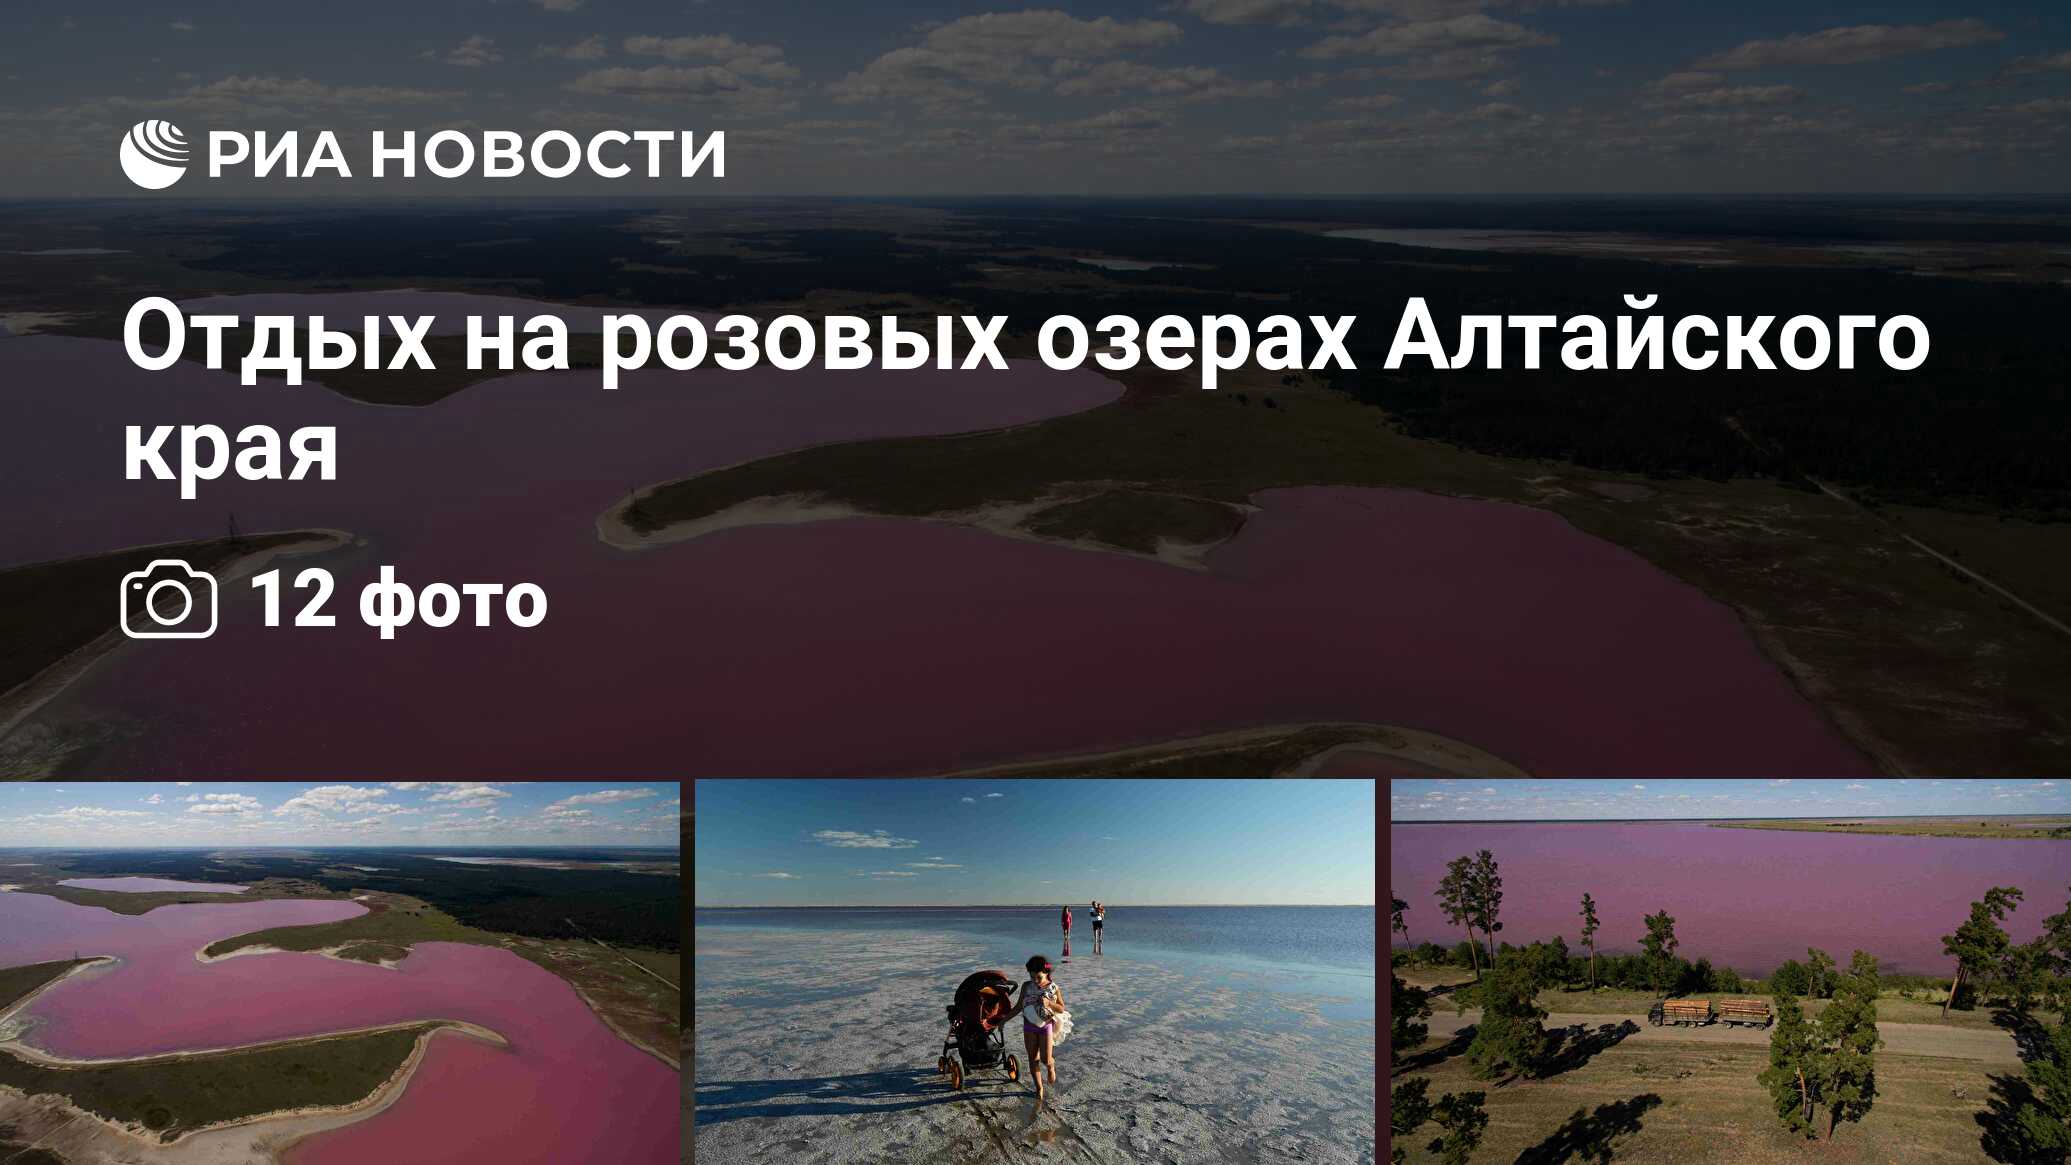 Розовое озеро Алтайский край на карте